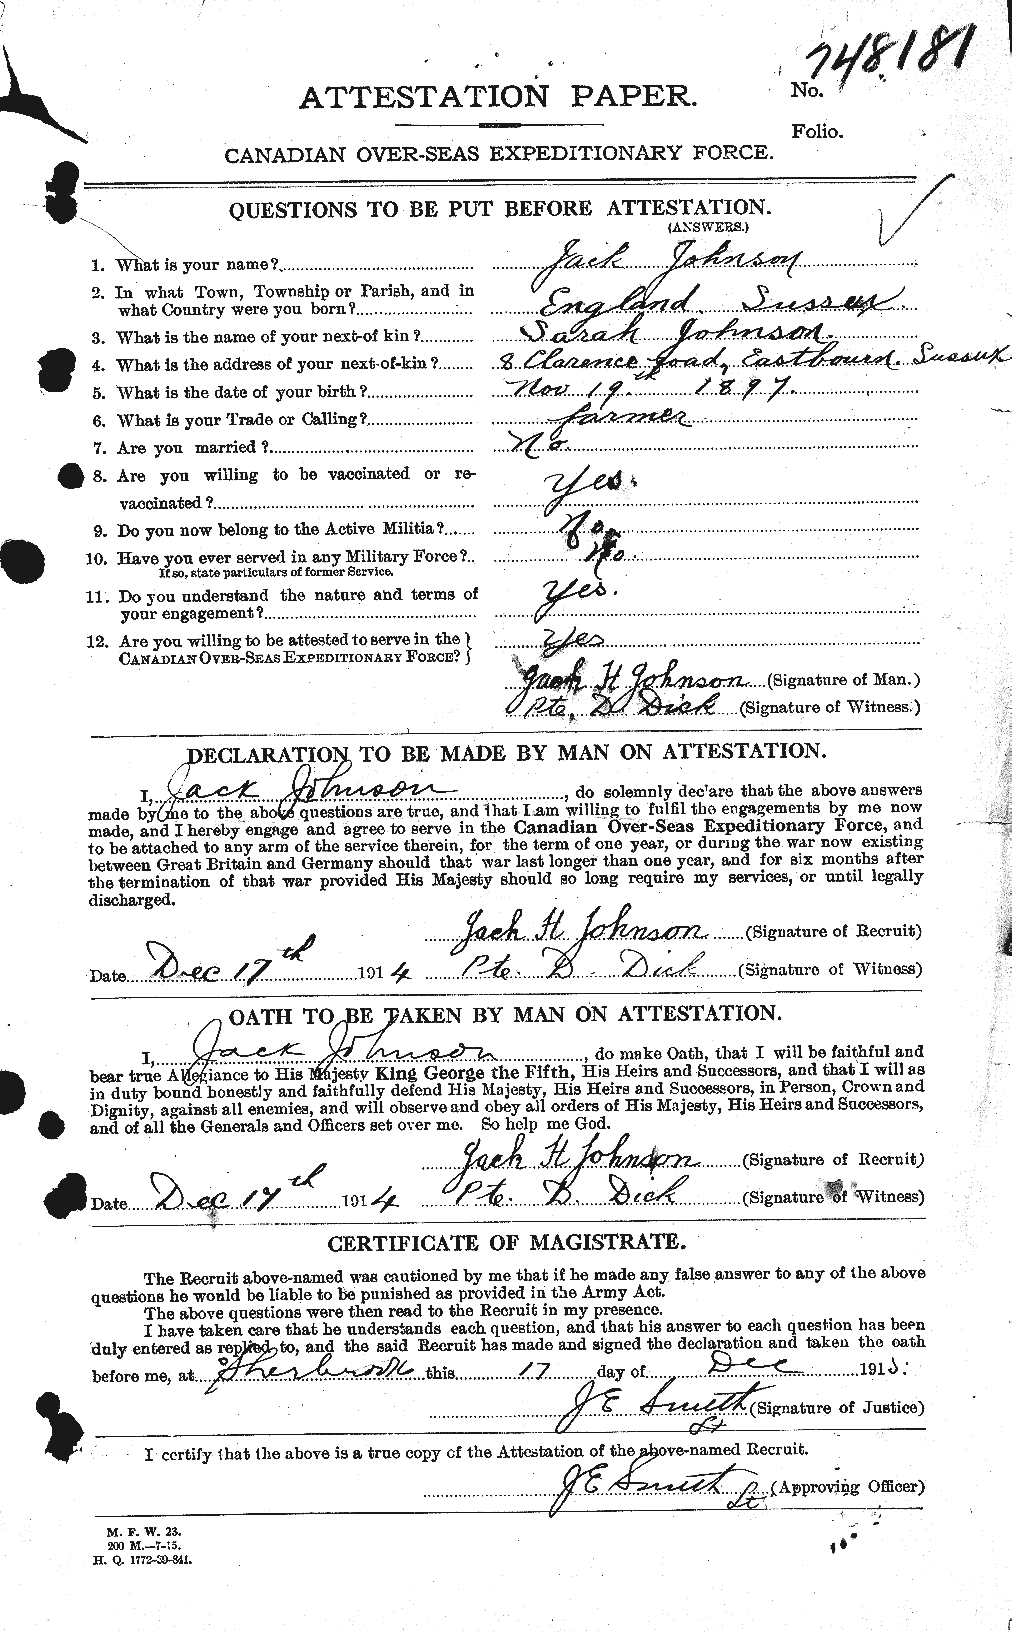 Dossiers du Personnel de la Première Guerre mondiale - CEC 420584a